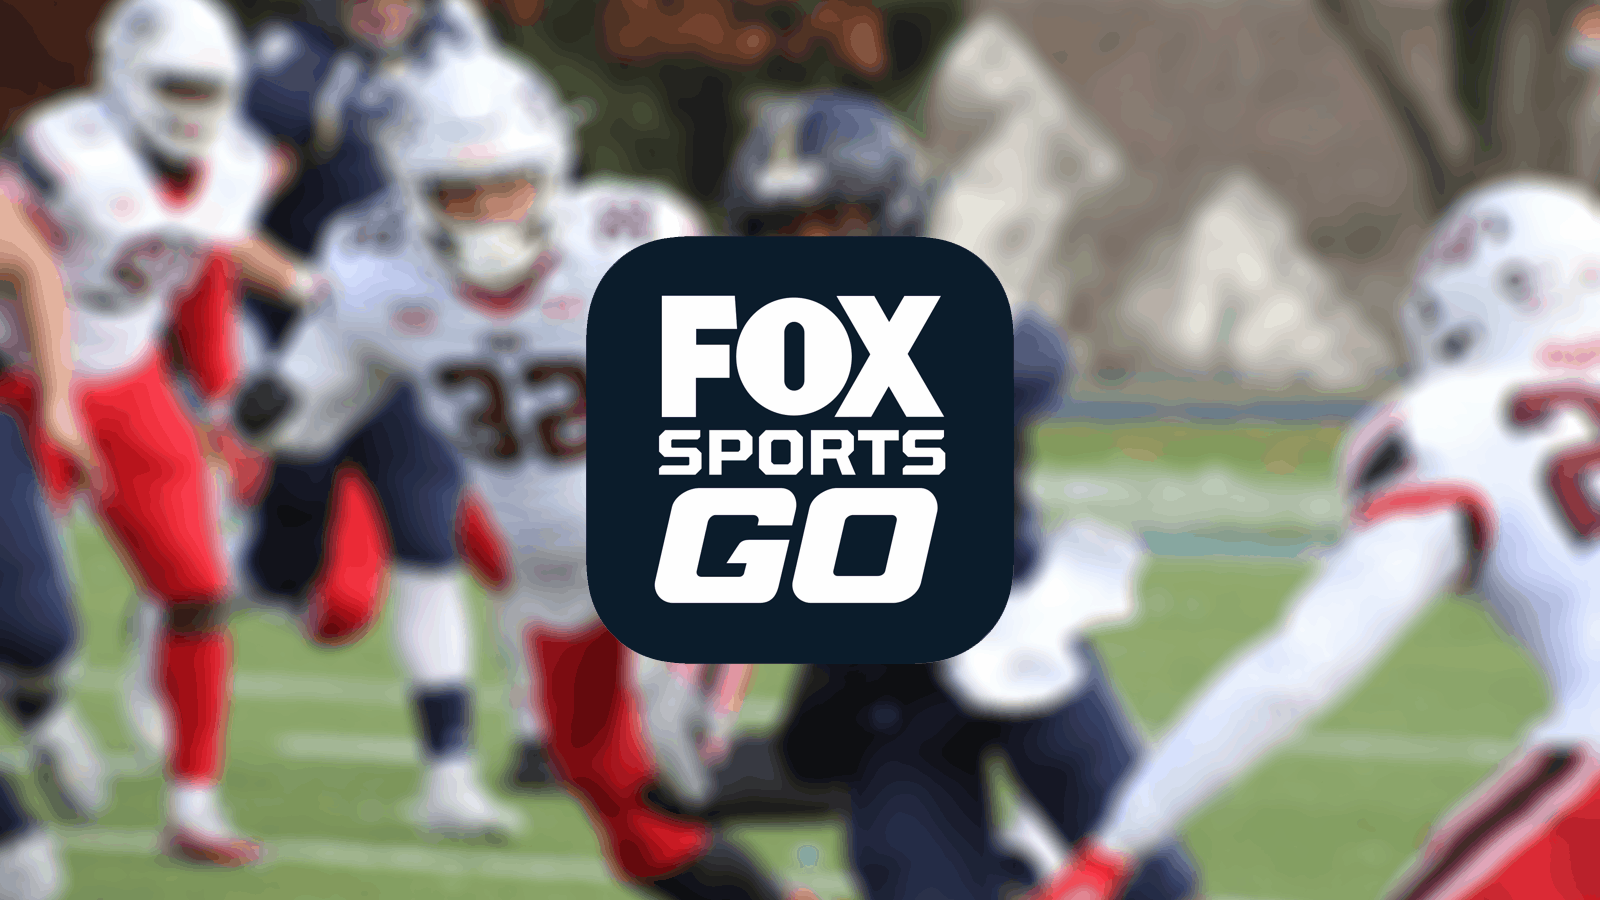 5 VPN Terbaik untuk Fox Sports GO pada 2019 - Nikmati Konten Olahraga Langsung & Atas Permintaan di Perangkat Apa Pun!